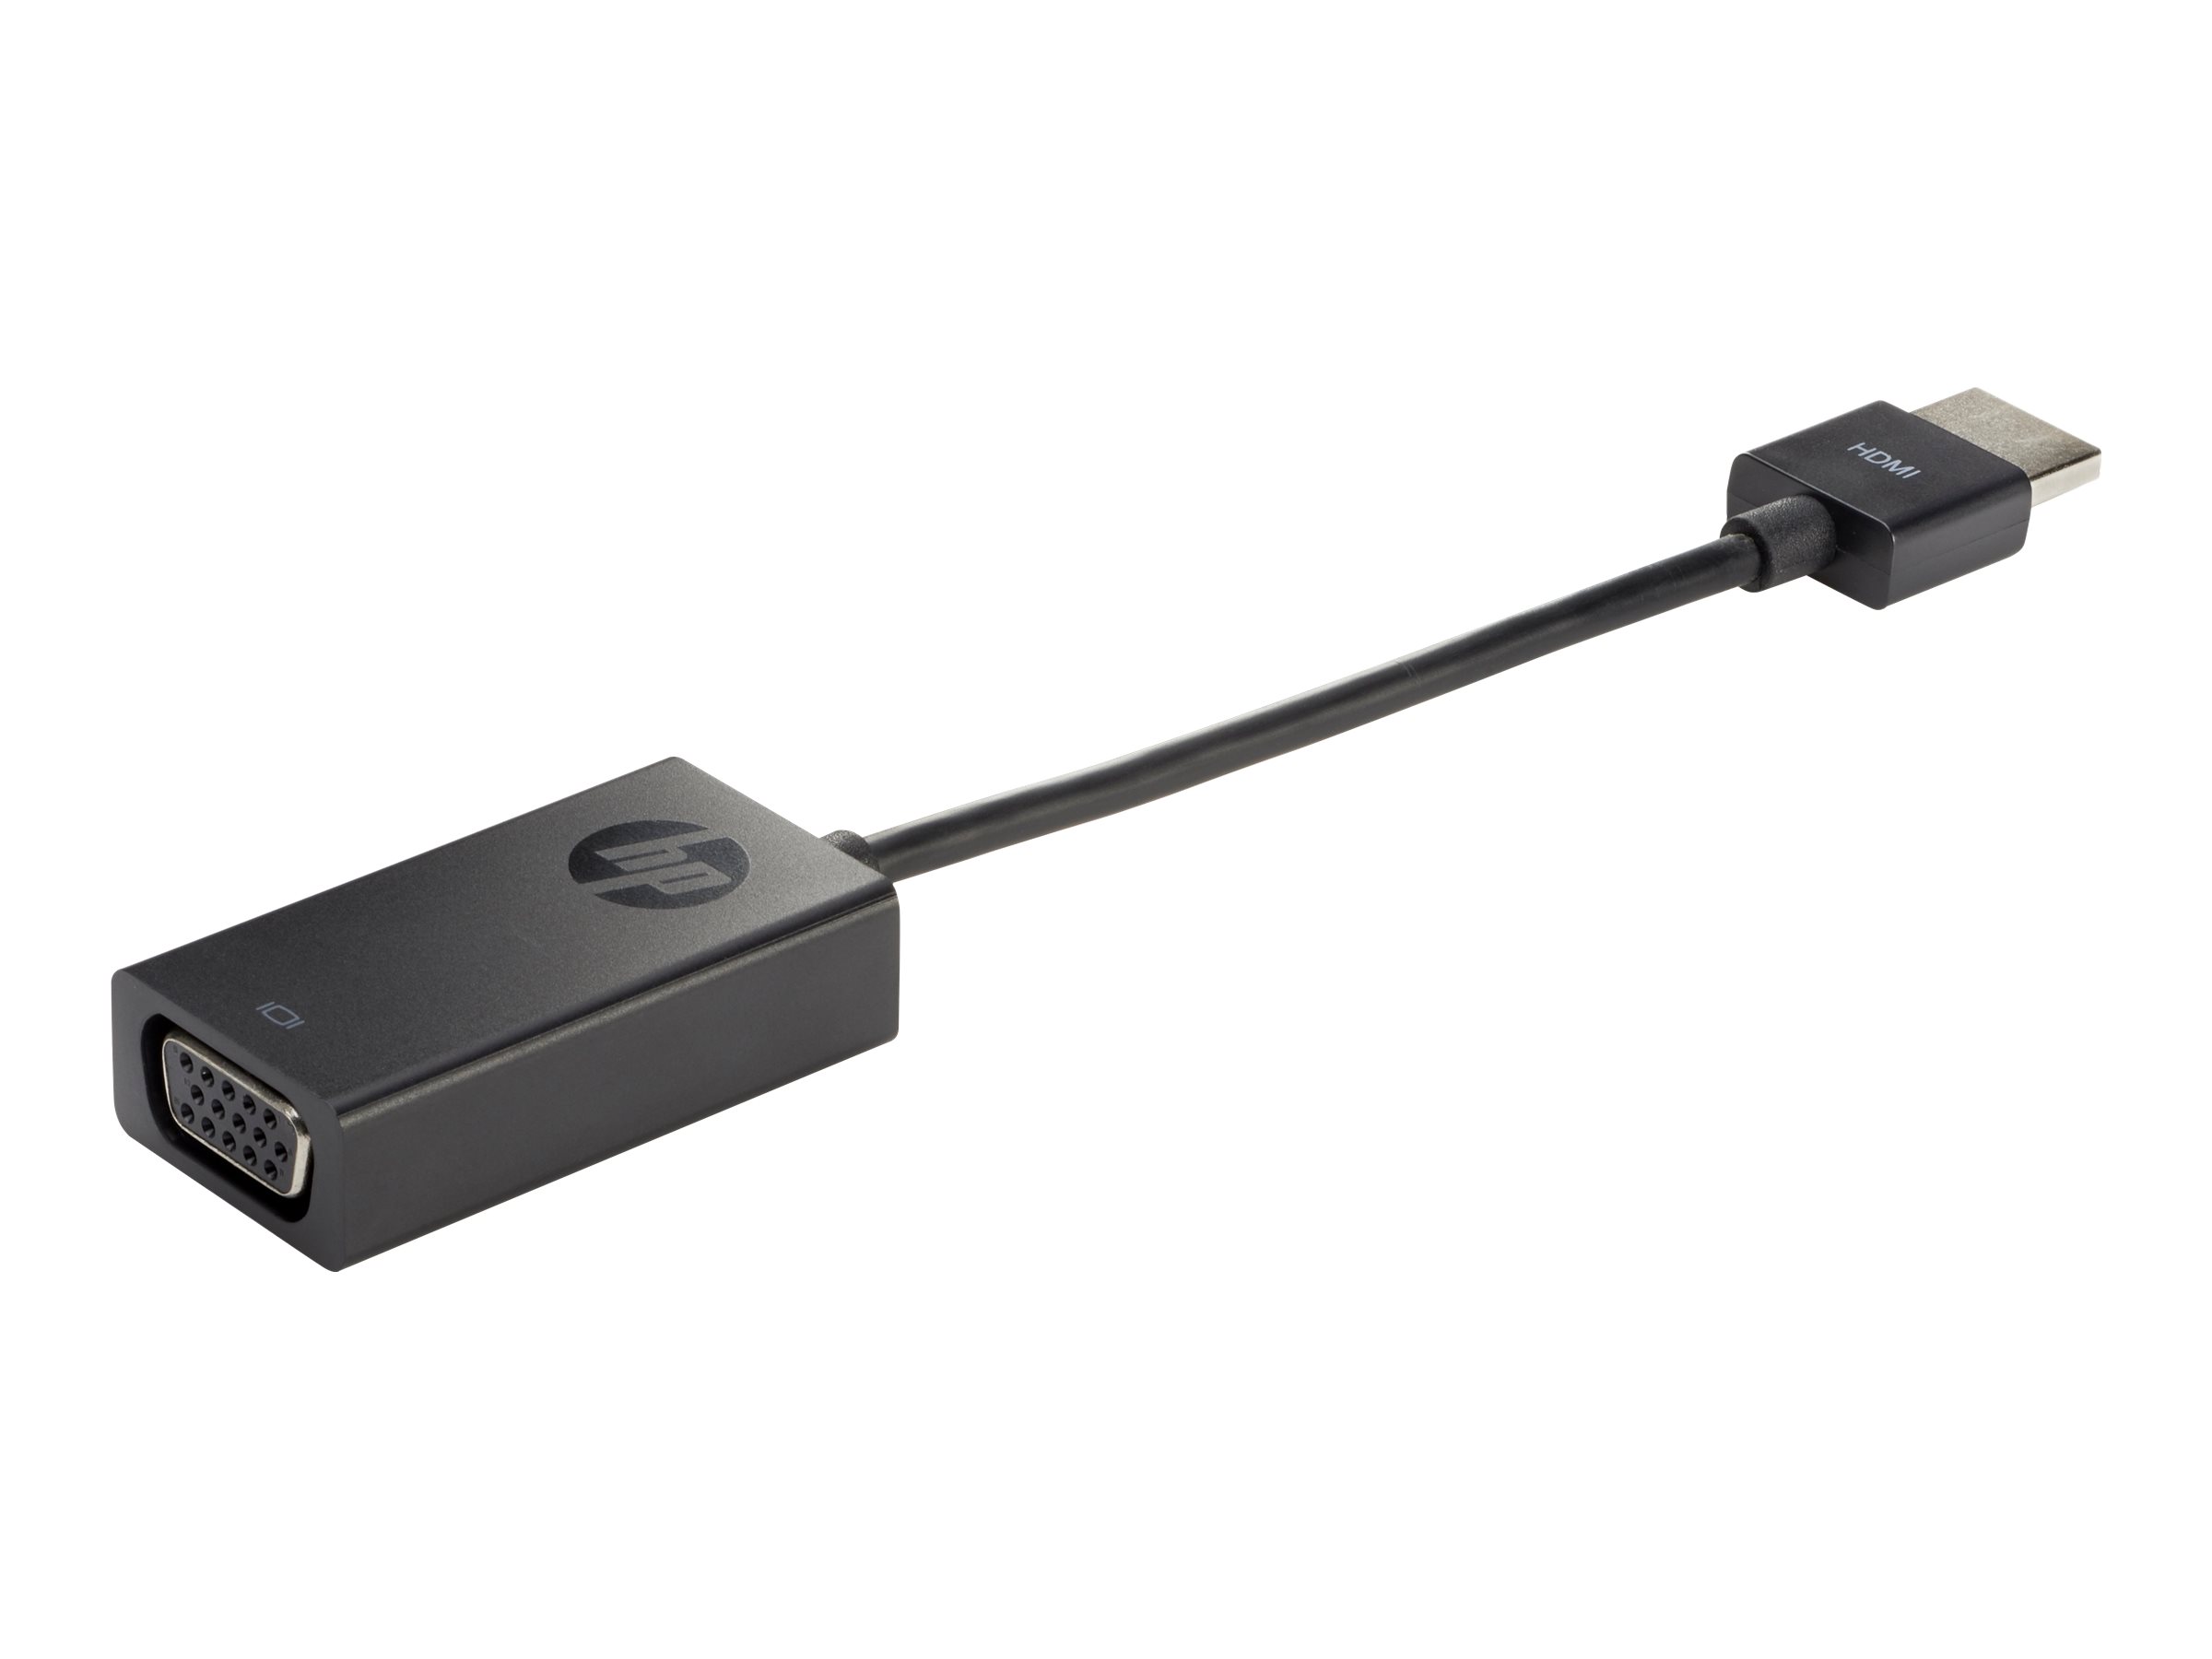 HP HDMI to VGA Display Adapter - Adaptateur vidéo - HD-15 (VGA) femelle pour HDMI mâle - 17.3 cm - support 1080p - pour HP 20, 22, 24, 27; Pavilion 13, 14, 15, 17; Portable 24, 27, 590, 595 - X1B84AA#ABB - Accessoires pour téléviseurs